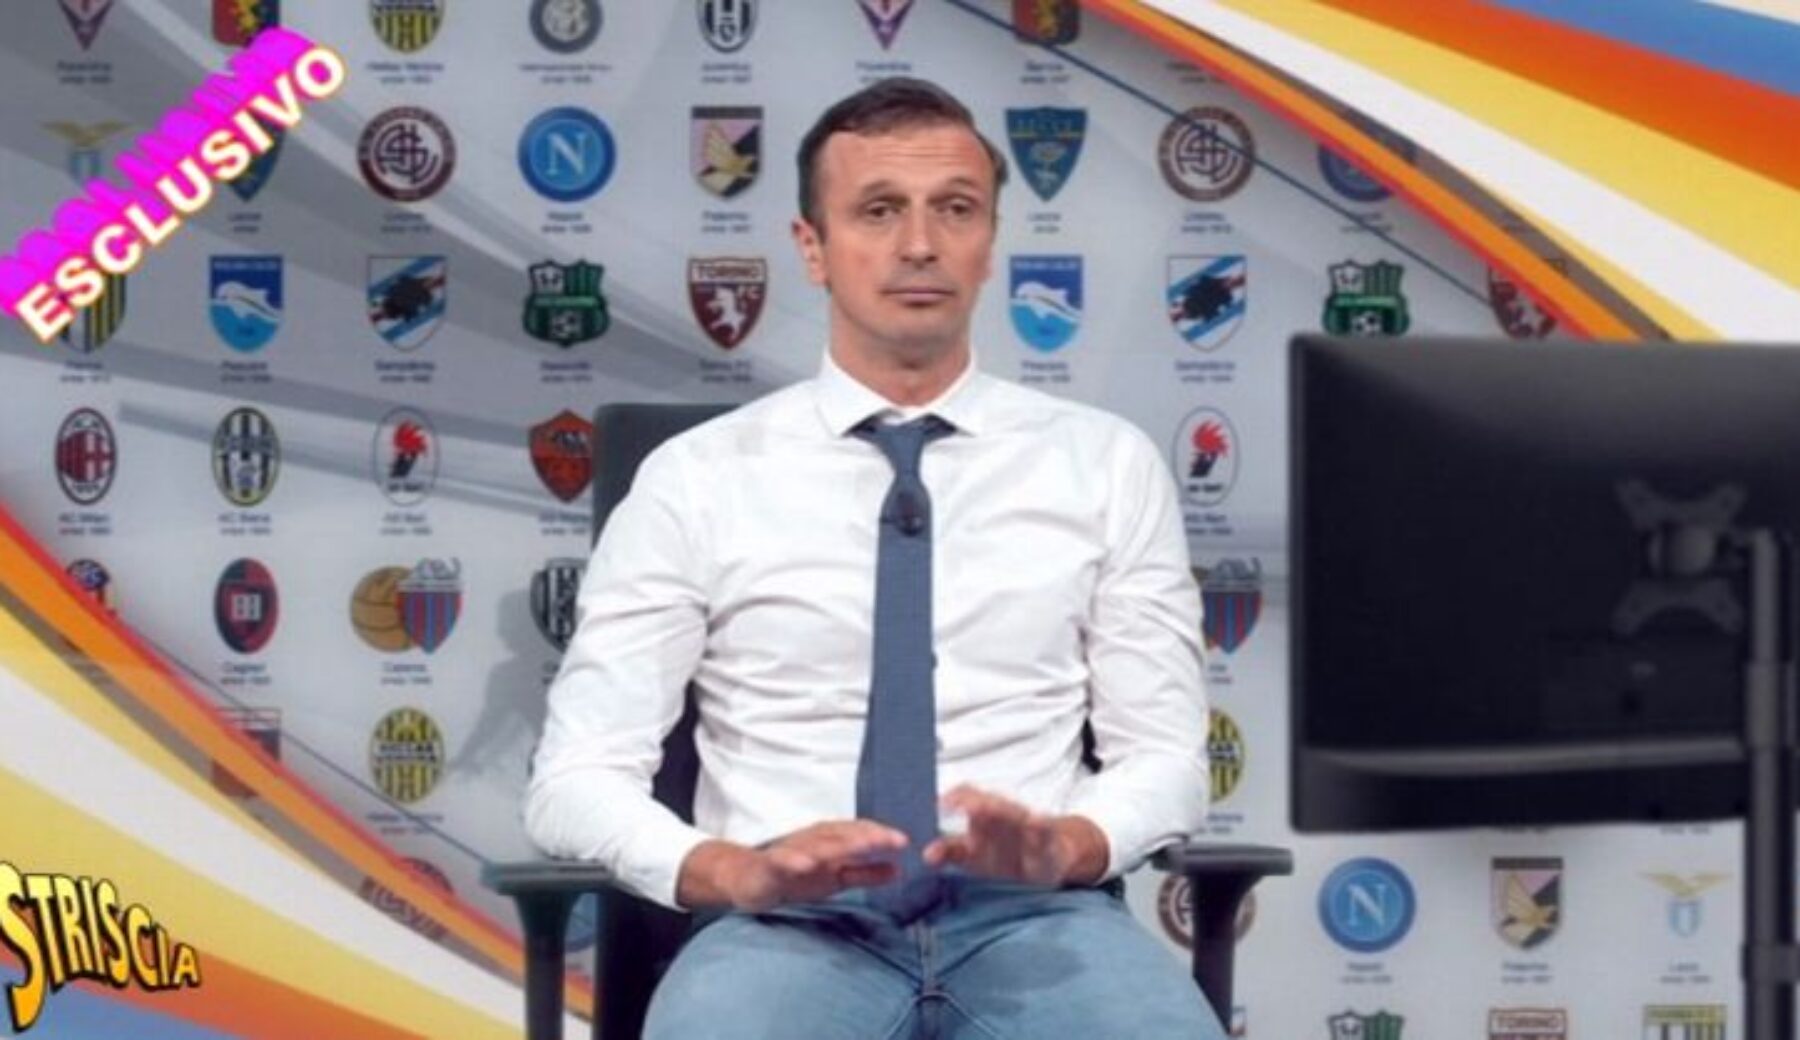 Anticipazione: questa sera a Striscia il commento di Massimiliano Allegri su Inter-Juventus